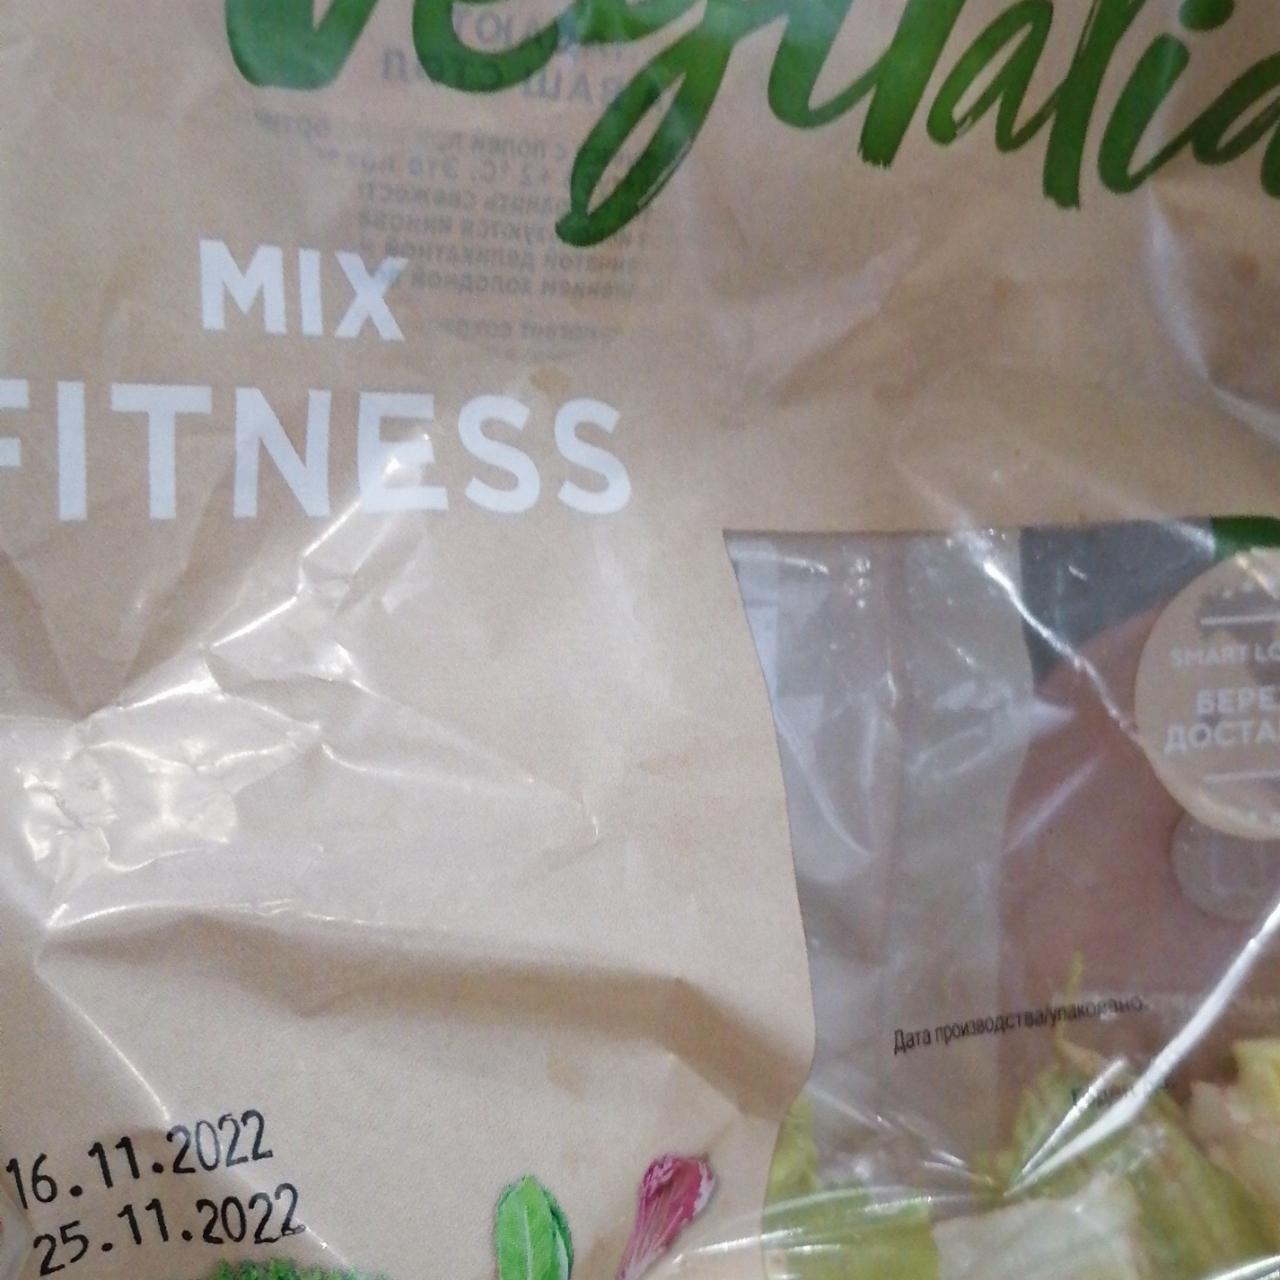 Фото - Овощная смесь Микс Fitness Vegitalia Promo